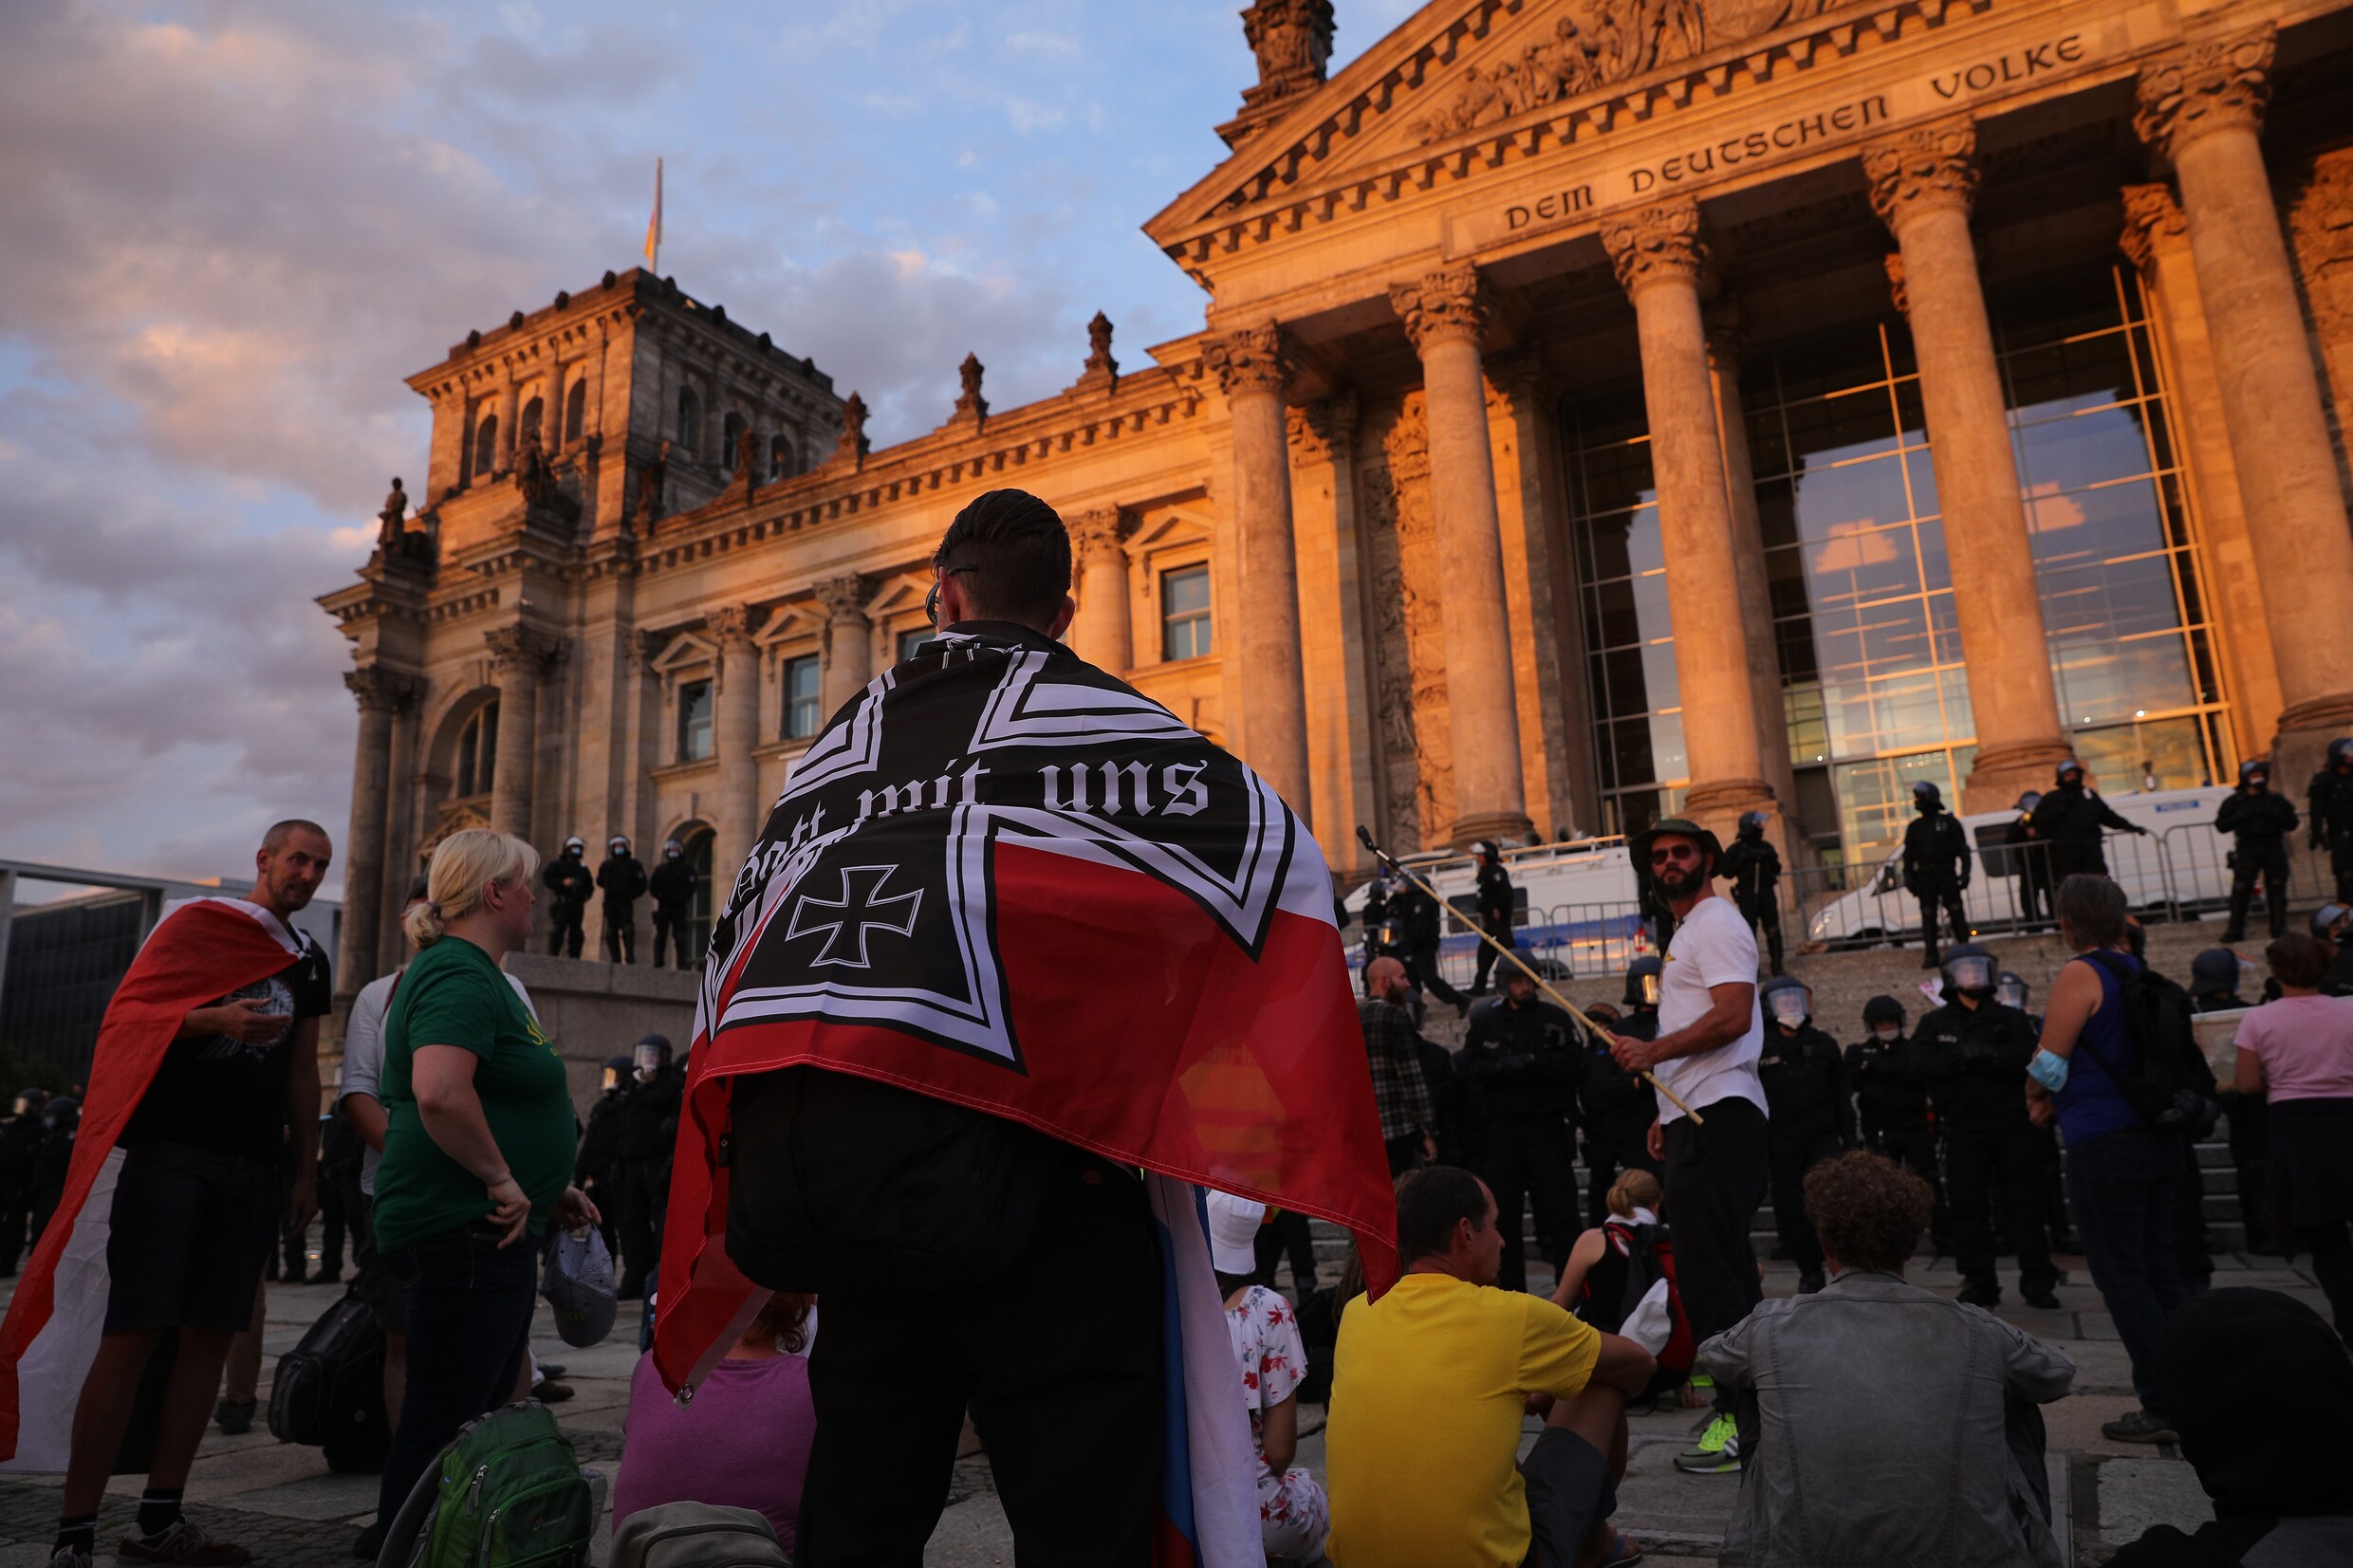 Betogers tegen corona bestormen Duitse Rijksdag met vlaggen uit nazitijd